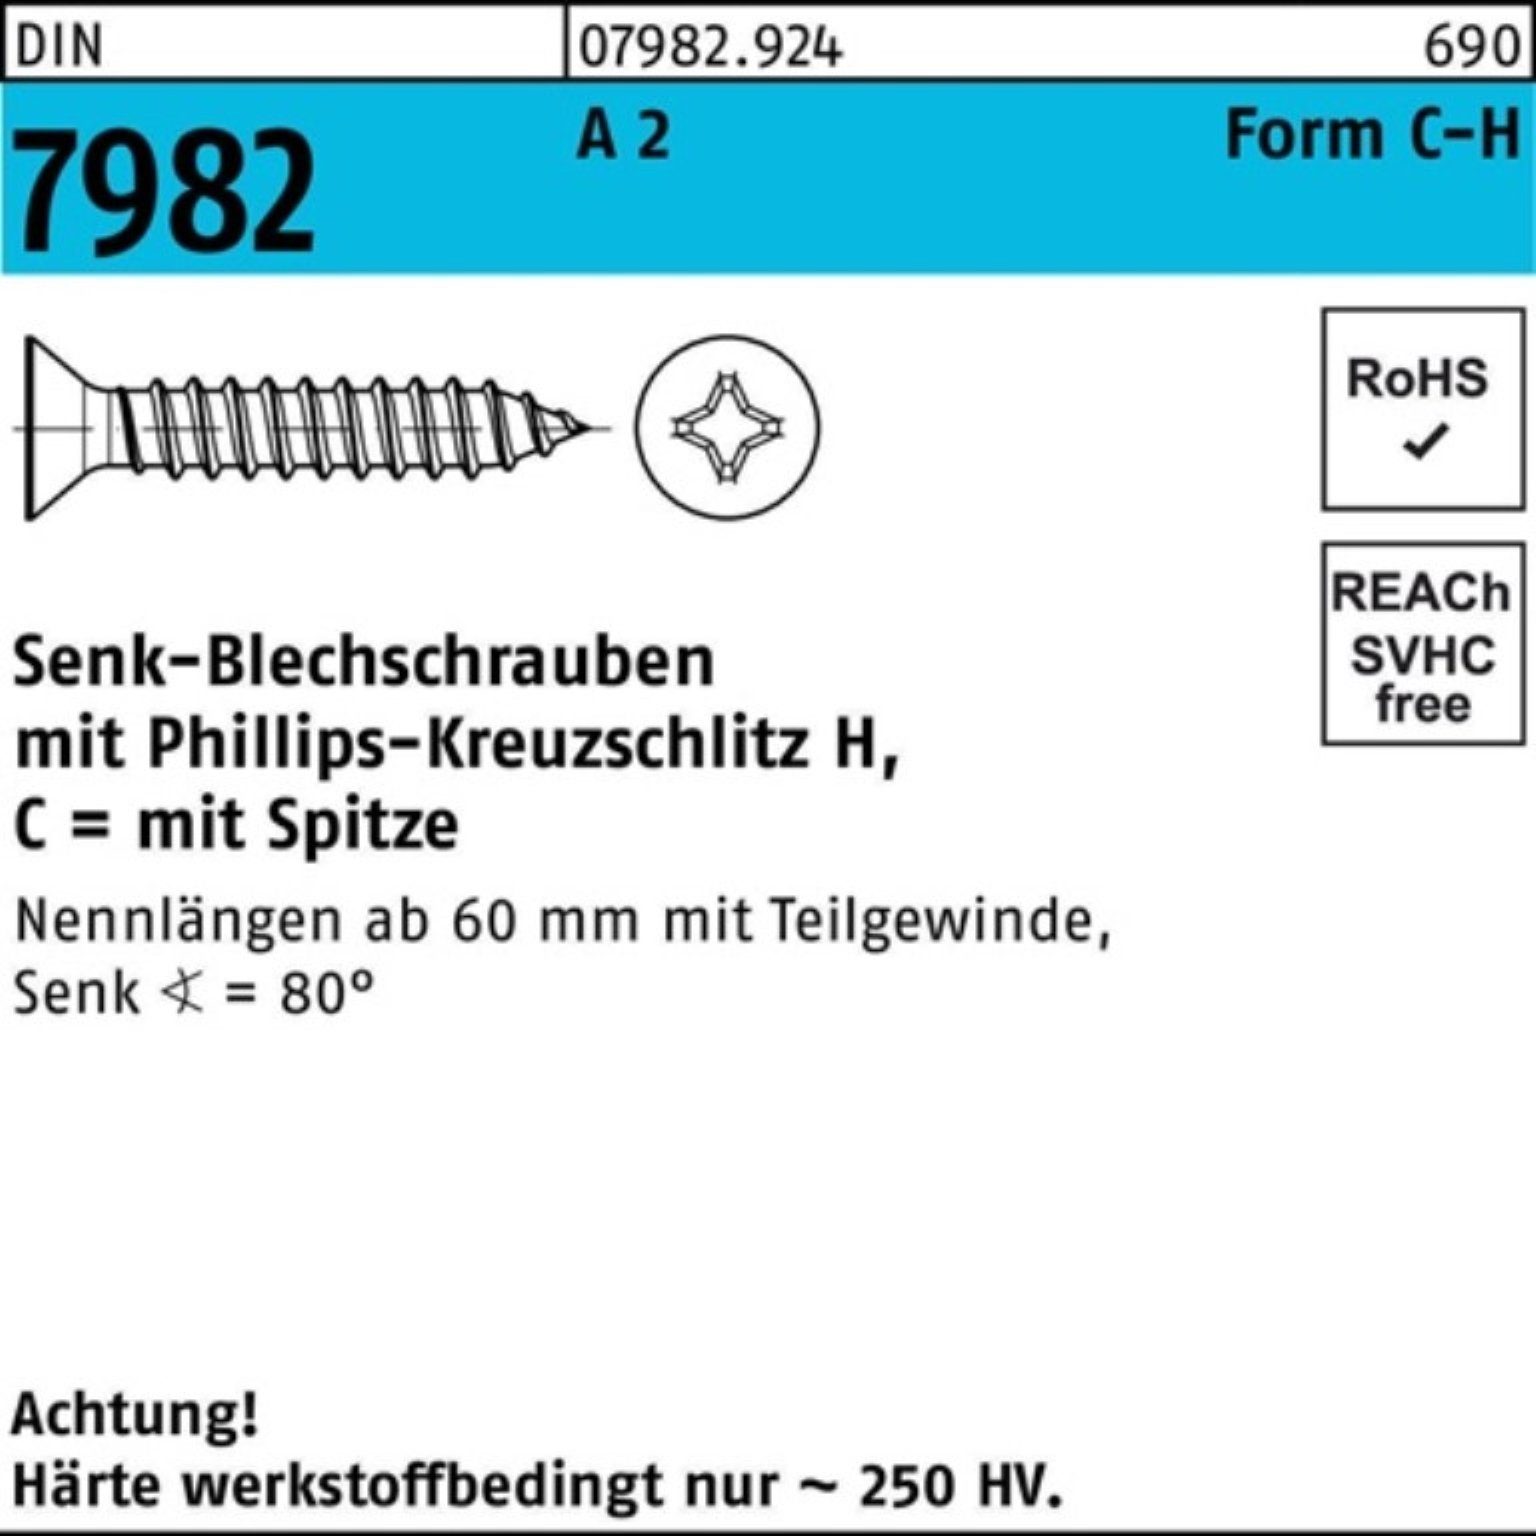 Reyher Schraube DIN 3,5x 38-H Senkblechschraube Pack 100 100er C St 2 7982 PH/Spitze A